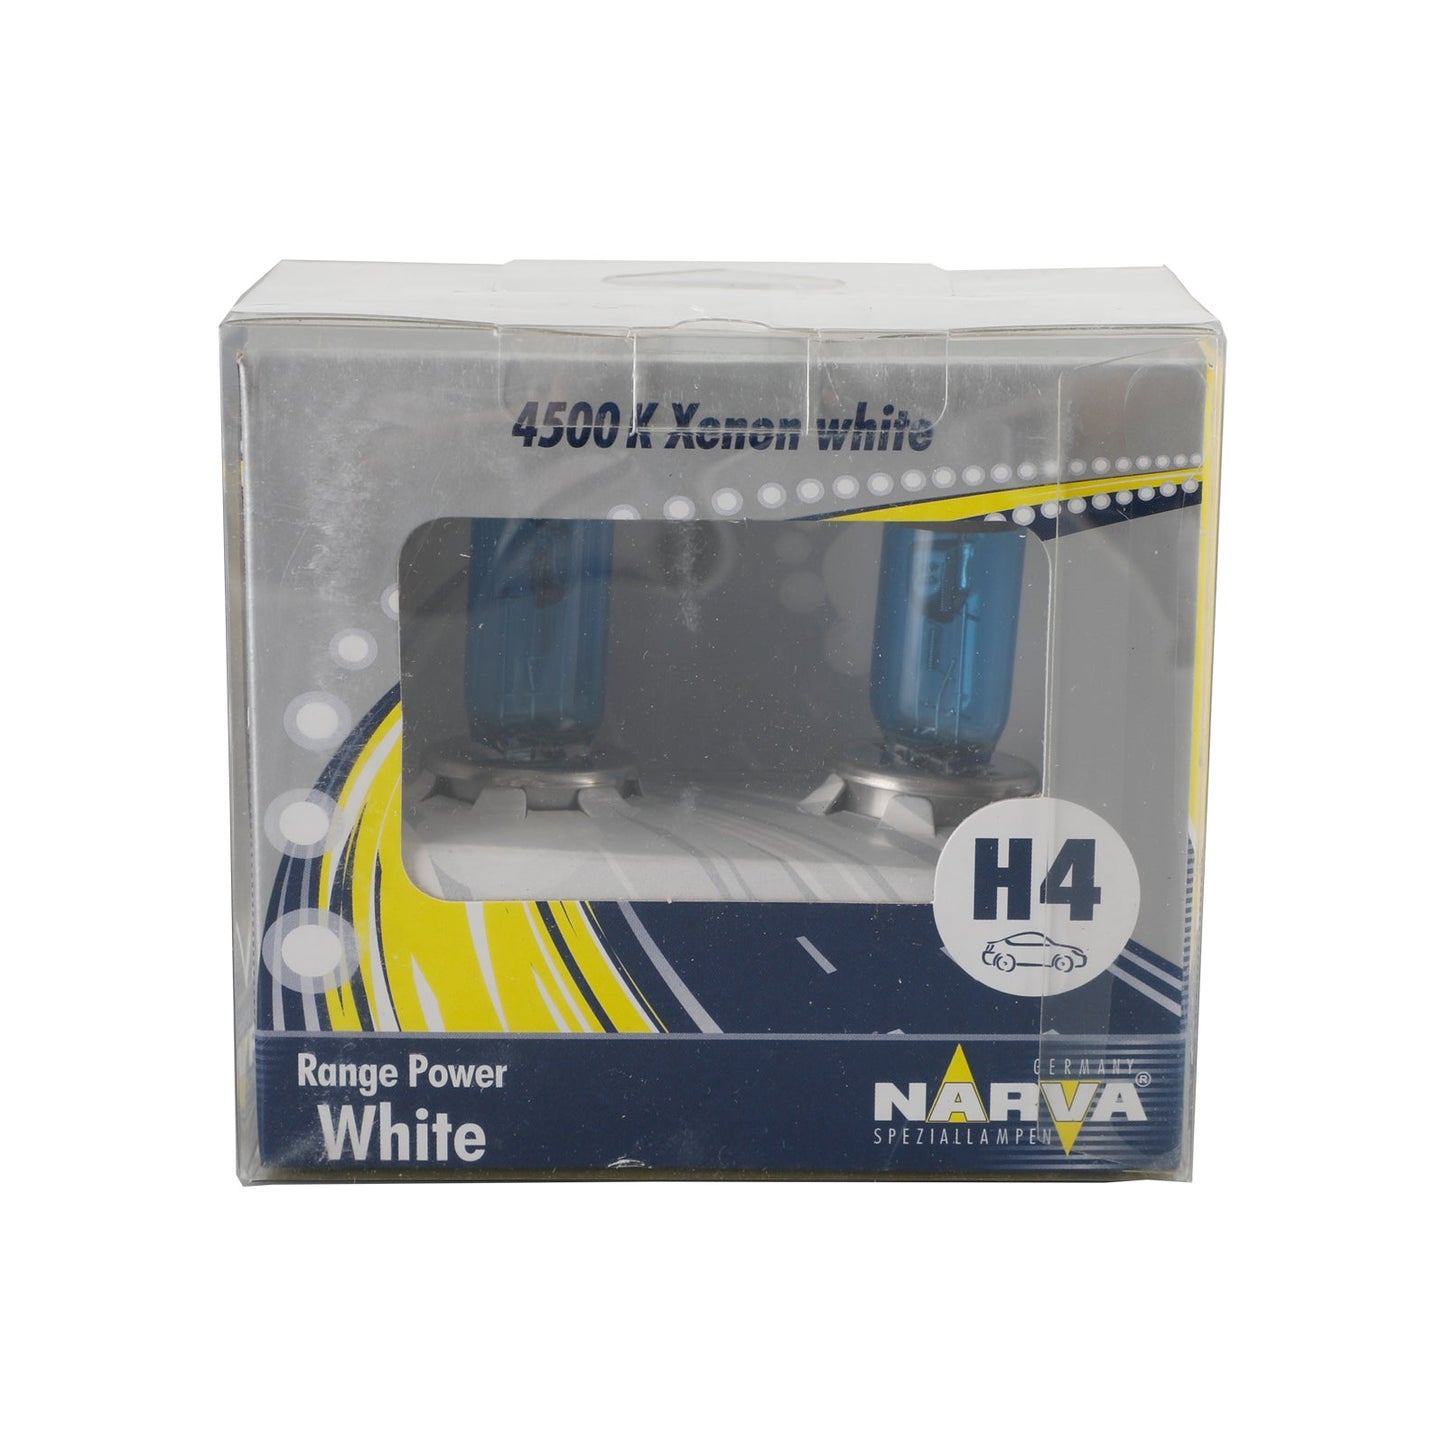 H4 RPW 98513 For NARVA Range Power White Car Headlight Lamp 12V100/90W P43t